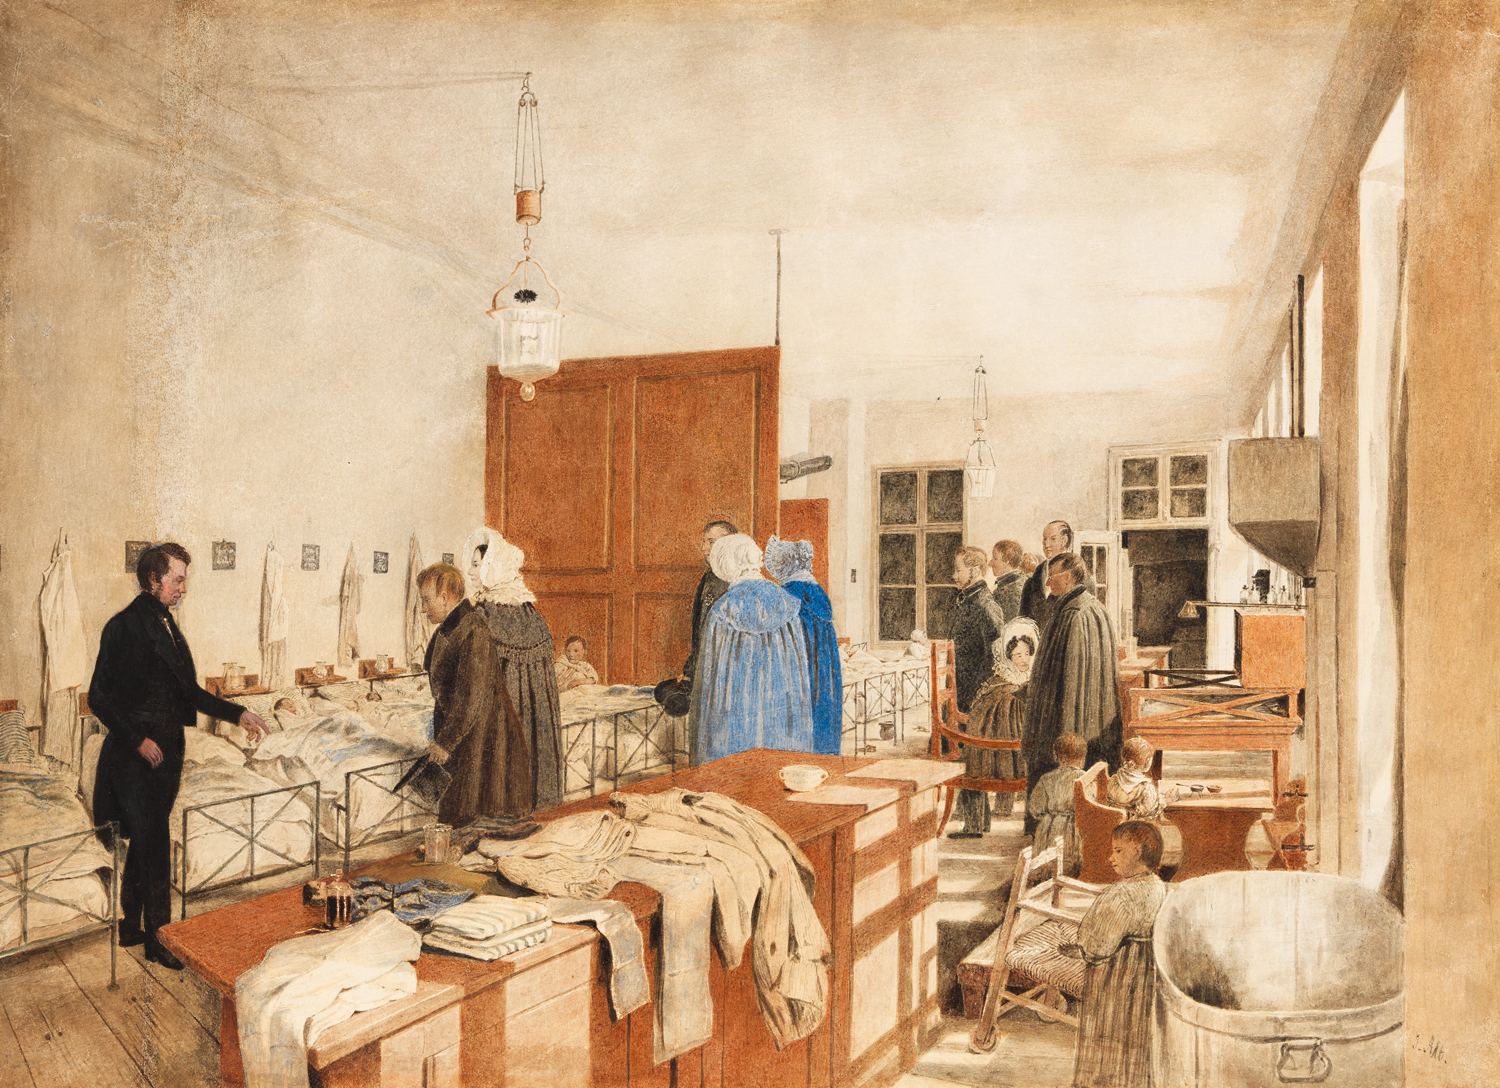 Einblick in ein Kinderspital mit aufgereihten Betten davor das Kaiserpaar mit Entourage